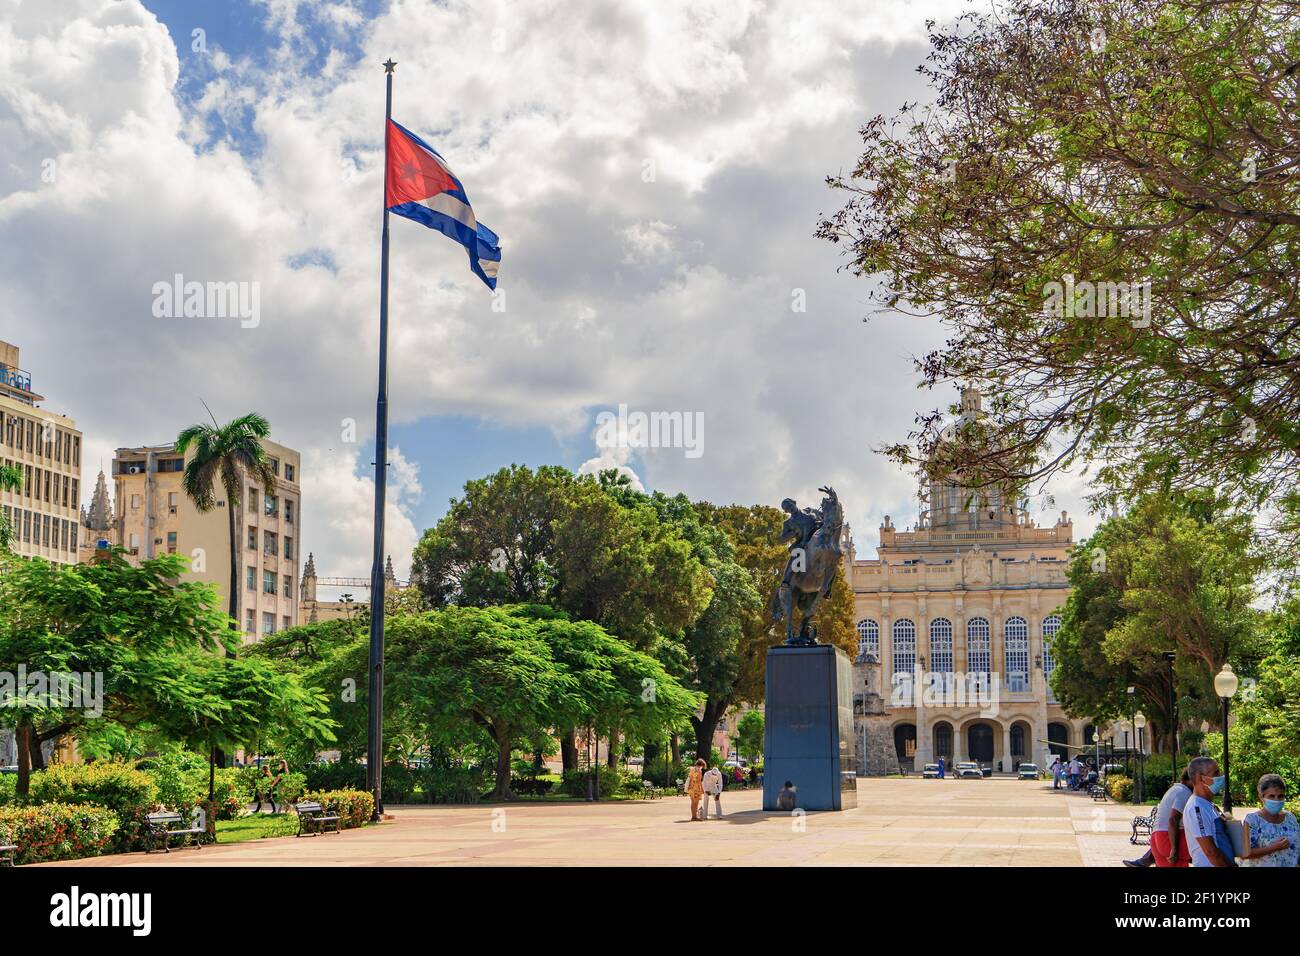 Havanna Kuba. 25. November 2020: Blick auf die Plaza 13 de Marzo mit der kubanischen Flagge, die auf einer Stange winkt, und der Statue von Jose Marti, der auf seinem Pferd reitet Stockfoto